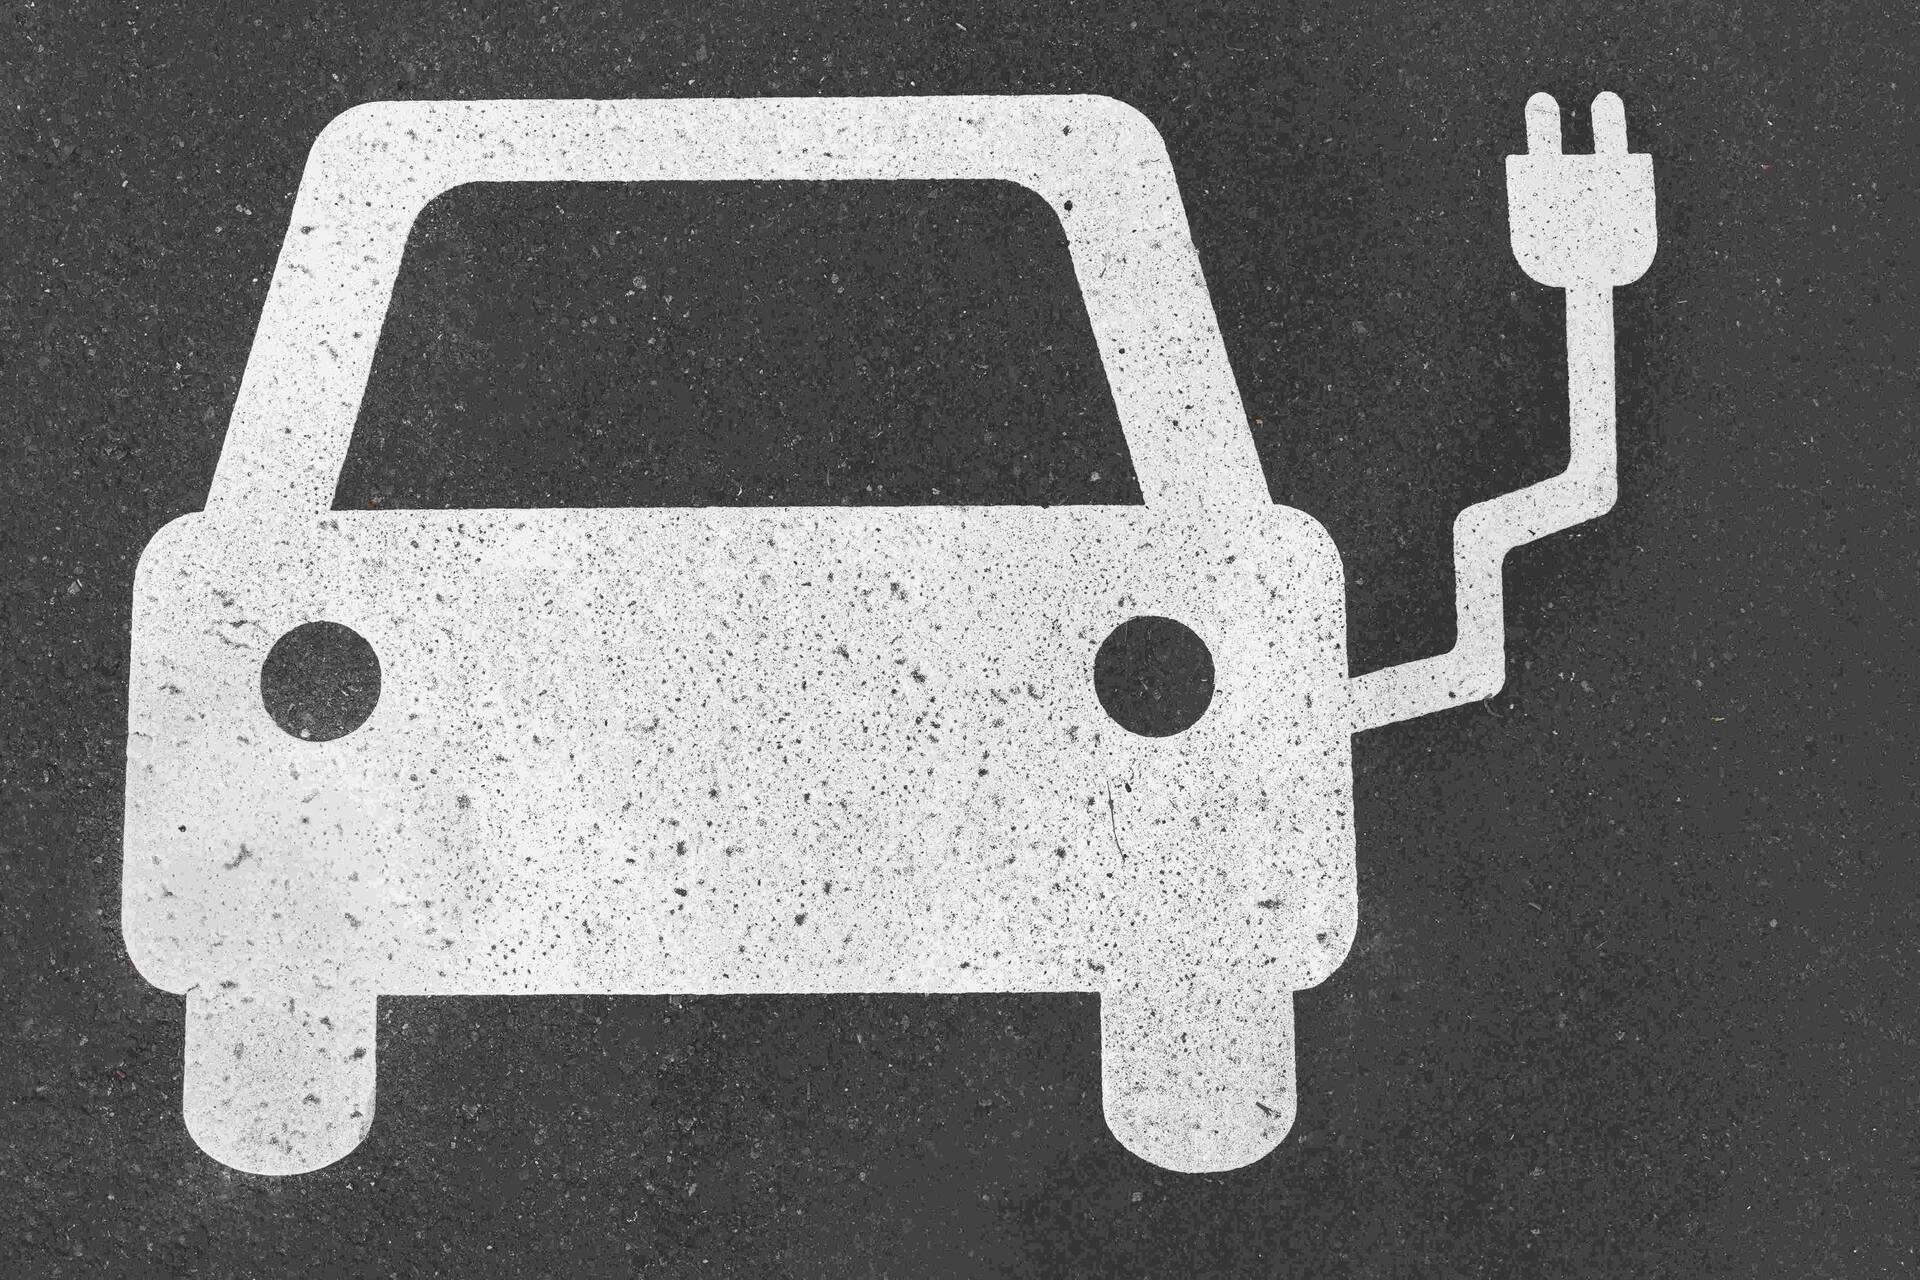 Elektrická mobilita: elektrická mobilita se skládá z vozidel na baterie, vodík a palivové články a vozidel poháněných syntetickými palivy